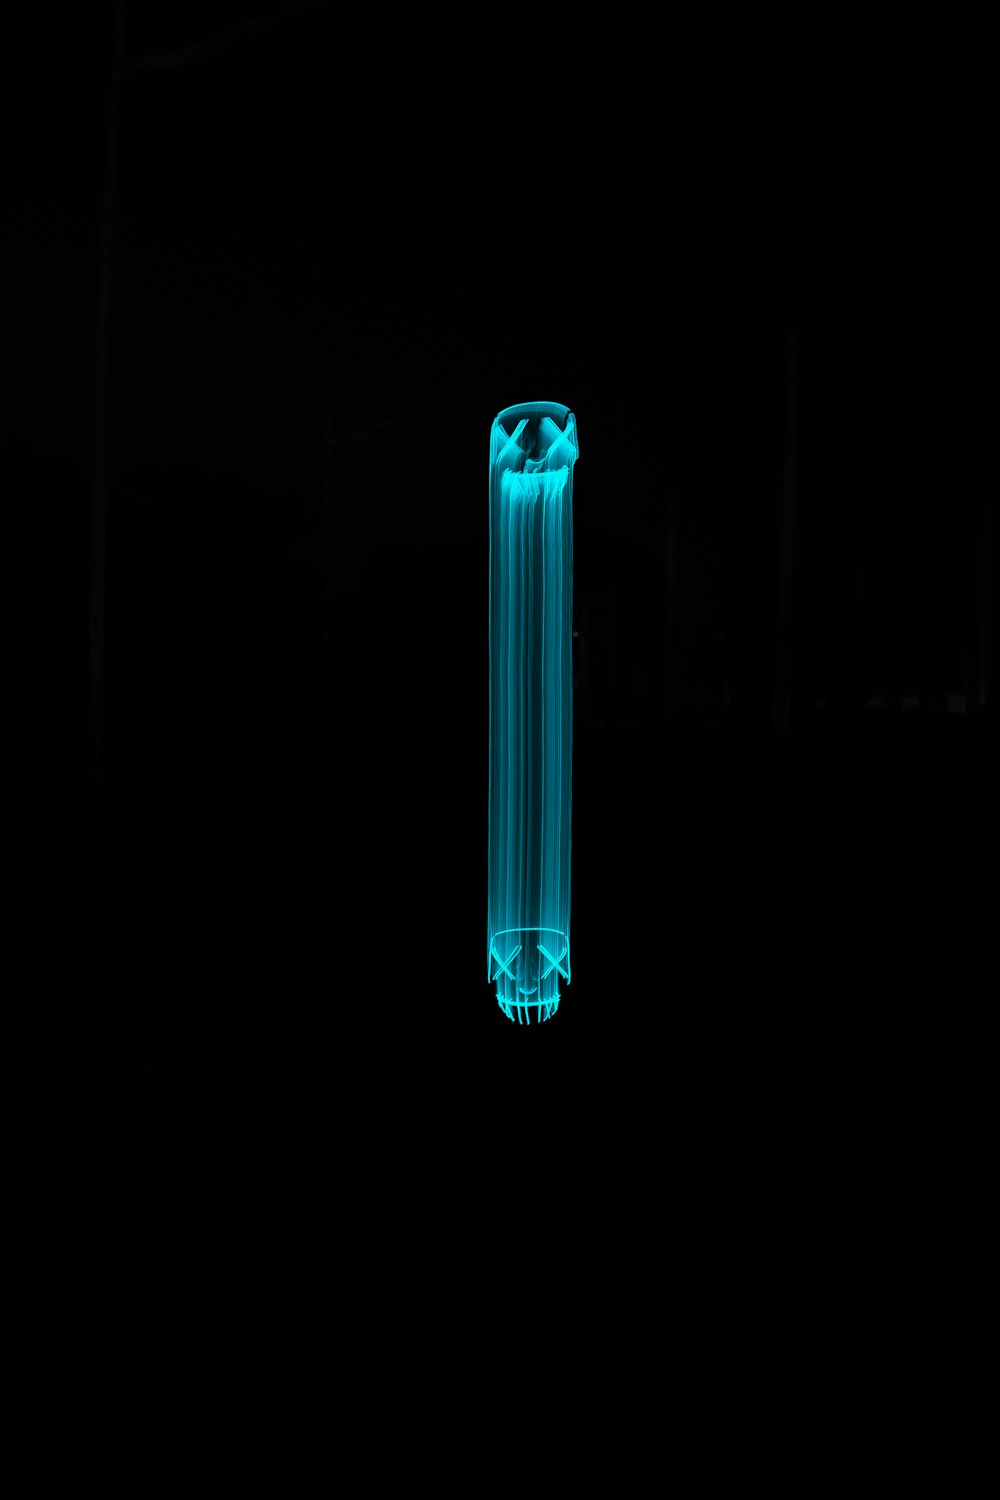 Un tube bleu est allumé dans l’obscurité